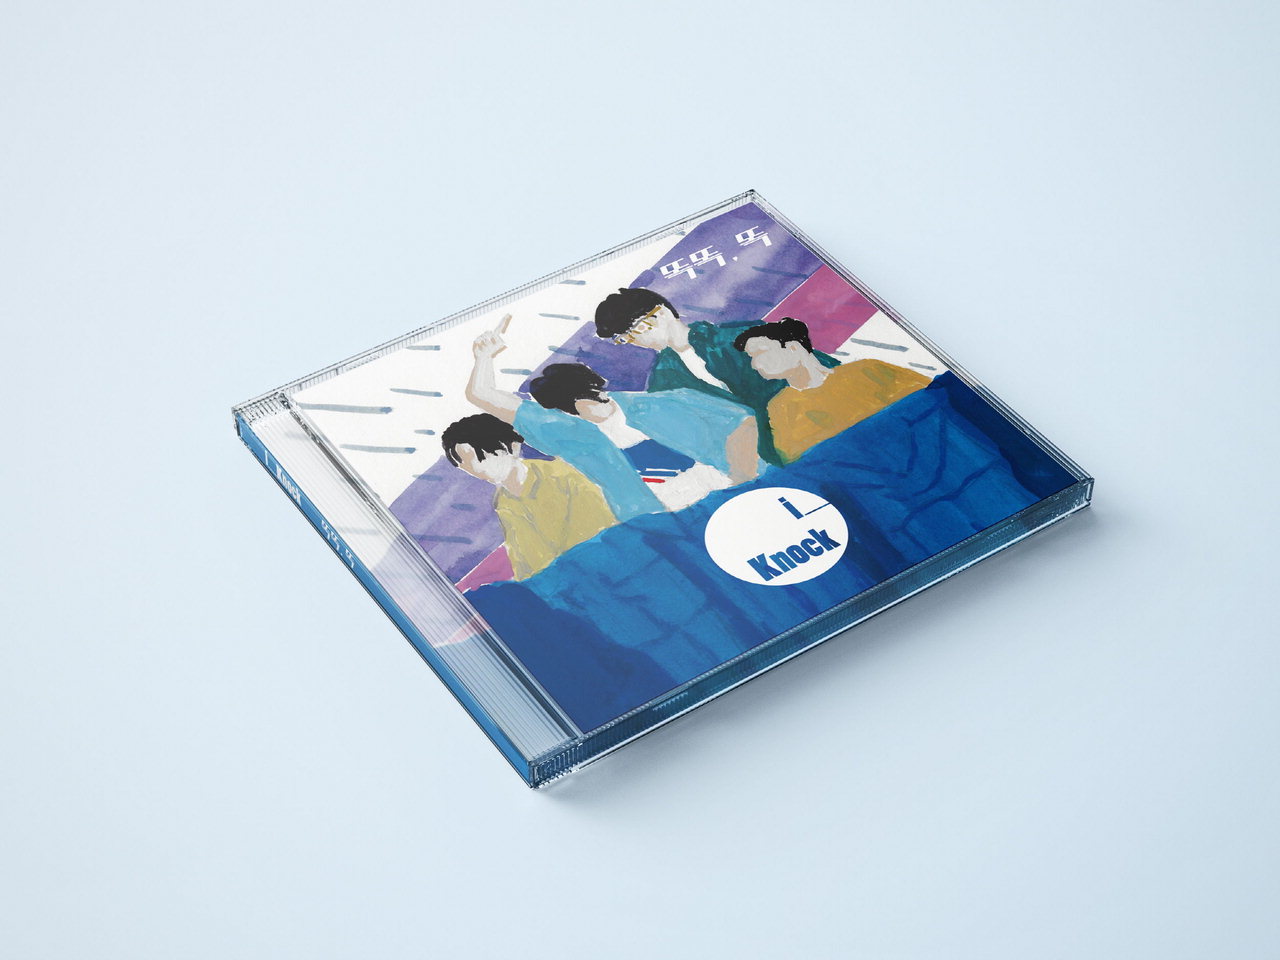 밴드 아이노크의 첫 정규앨범 <똑똑, 똑> 싸인 CD. 멤버 전원의 싸인이 포함되어 있으며, 앨범 커버는 김현묵 작가와 함께 작업했다. 총 10곡이 수록돼 있다.